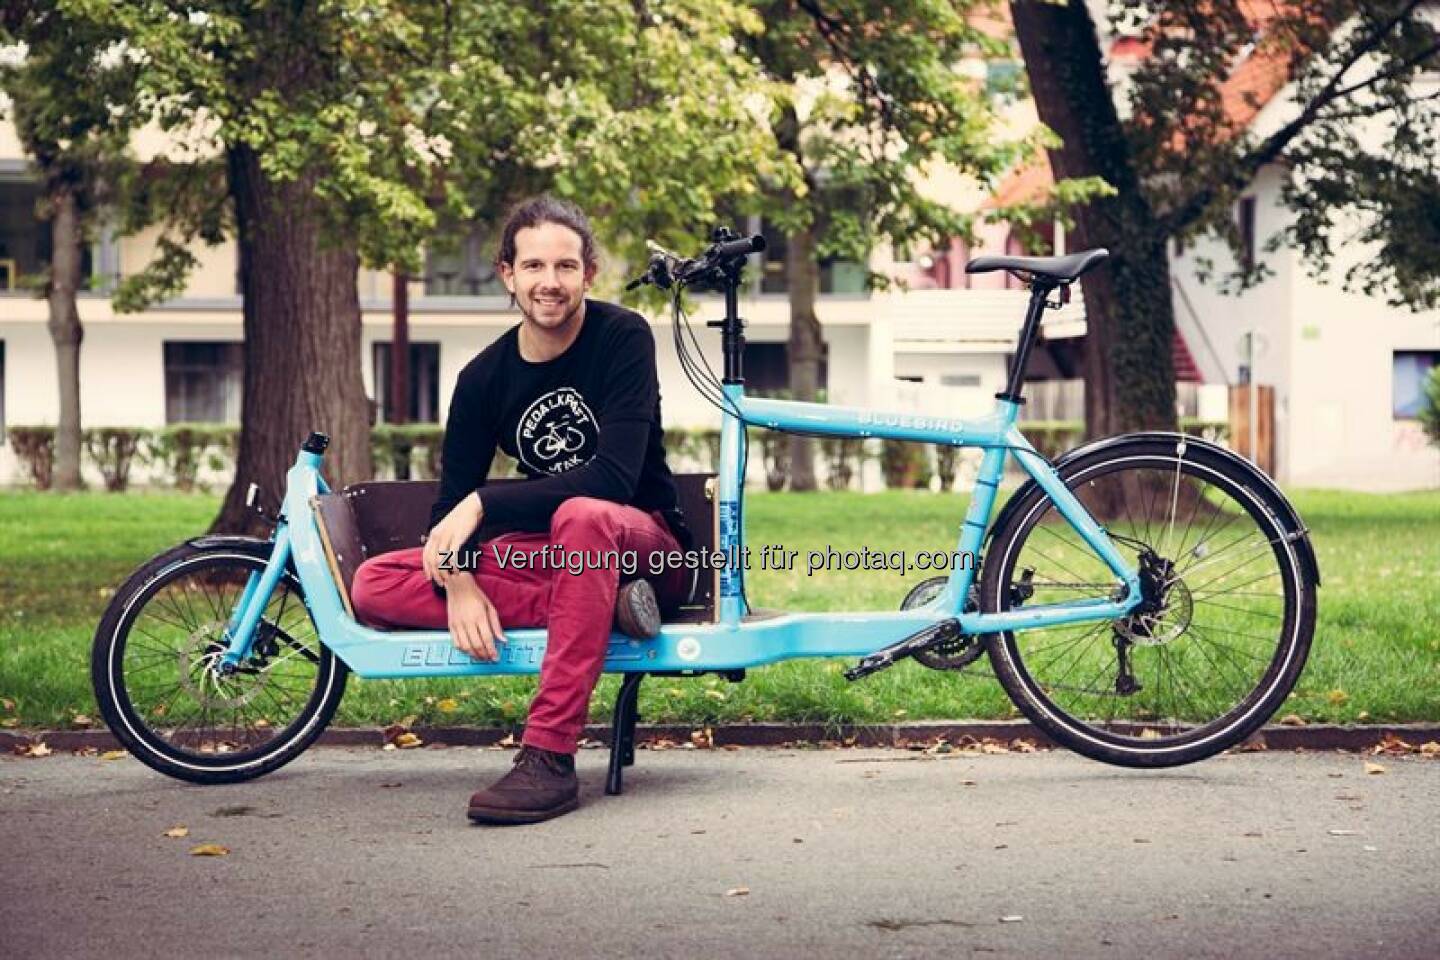 Daniel Kofler (GF Bike Citizens) : Bike Citizens befährt neue Wege : Fahrrad-Online-Plattform sammelt Geld über die Crowd : Für die Erschließung des Marktes in Amerika sowie für den Aufbau eines Online-Shops für die Vermarktung nützlicher Fahrrad-Produkte sammelt Bike Citizens ab 8. Oktober Kapital auf der Crowdfunding-Plattform Green Rocket : Fotocredit: Bike Citizens